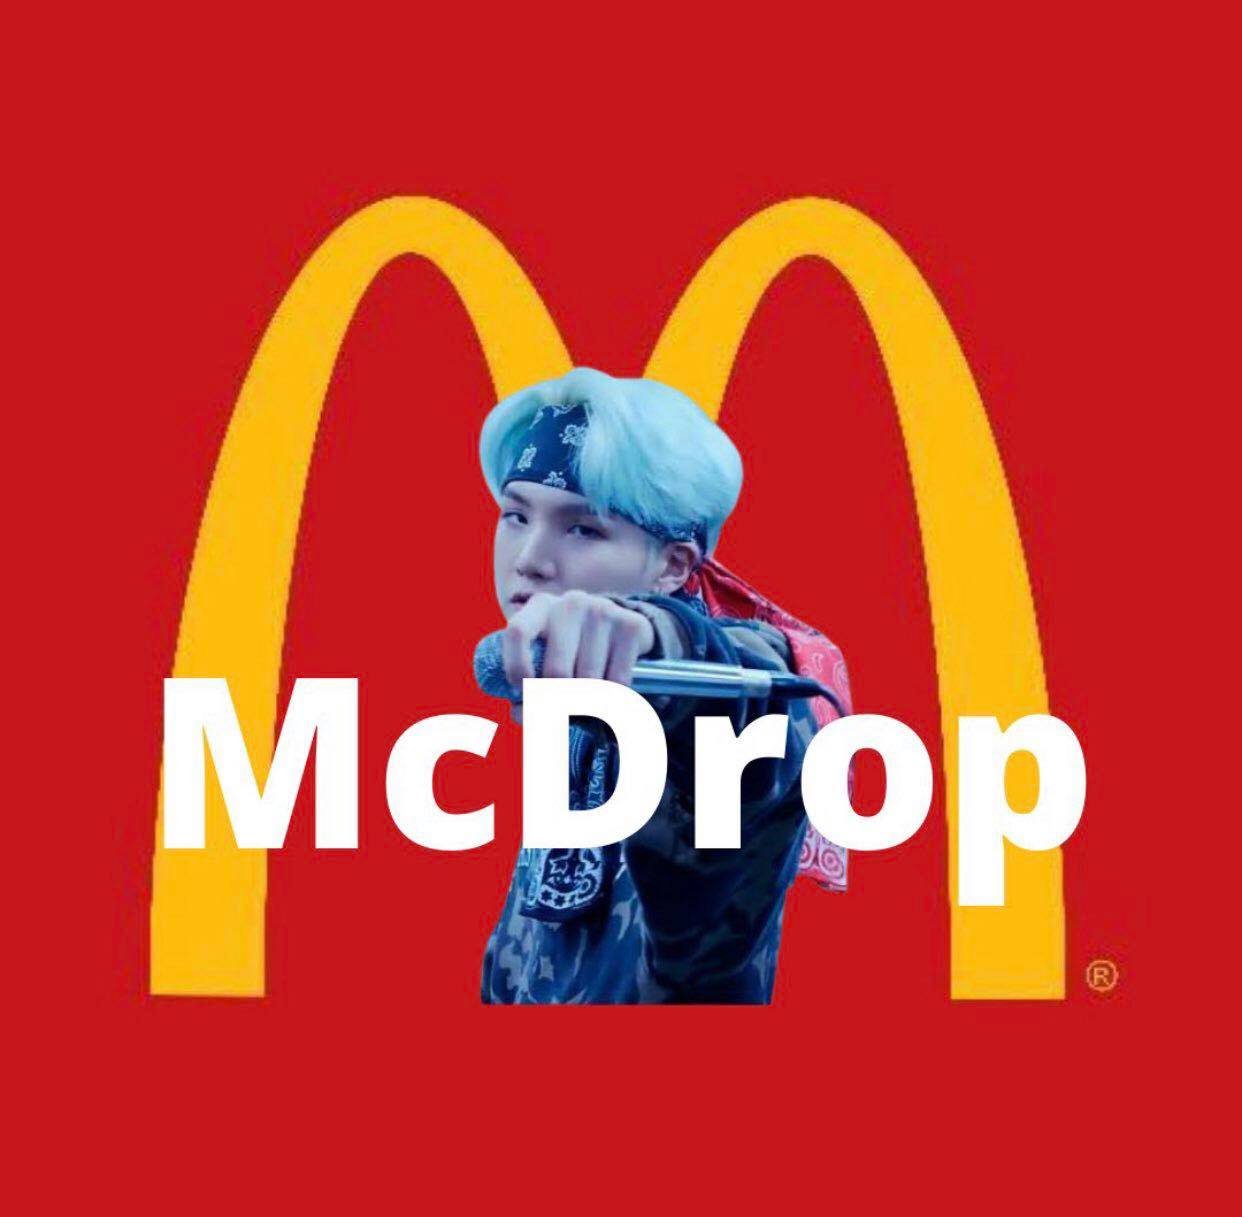 Từ khi McDonald's hợp tác với BTS, ARMY quyết định đổi tên bài hát Mic drop nhưng đổi thành Mcdrop.